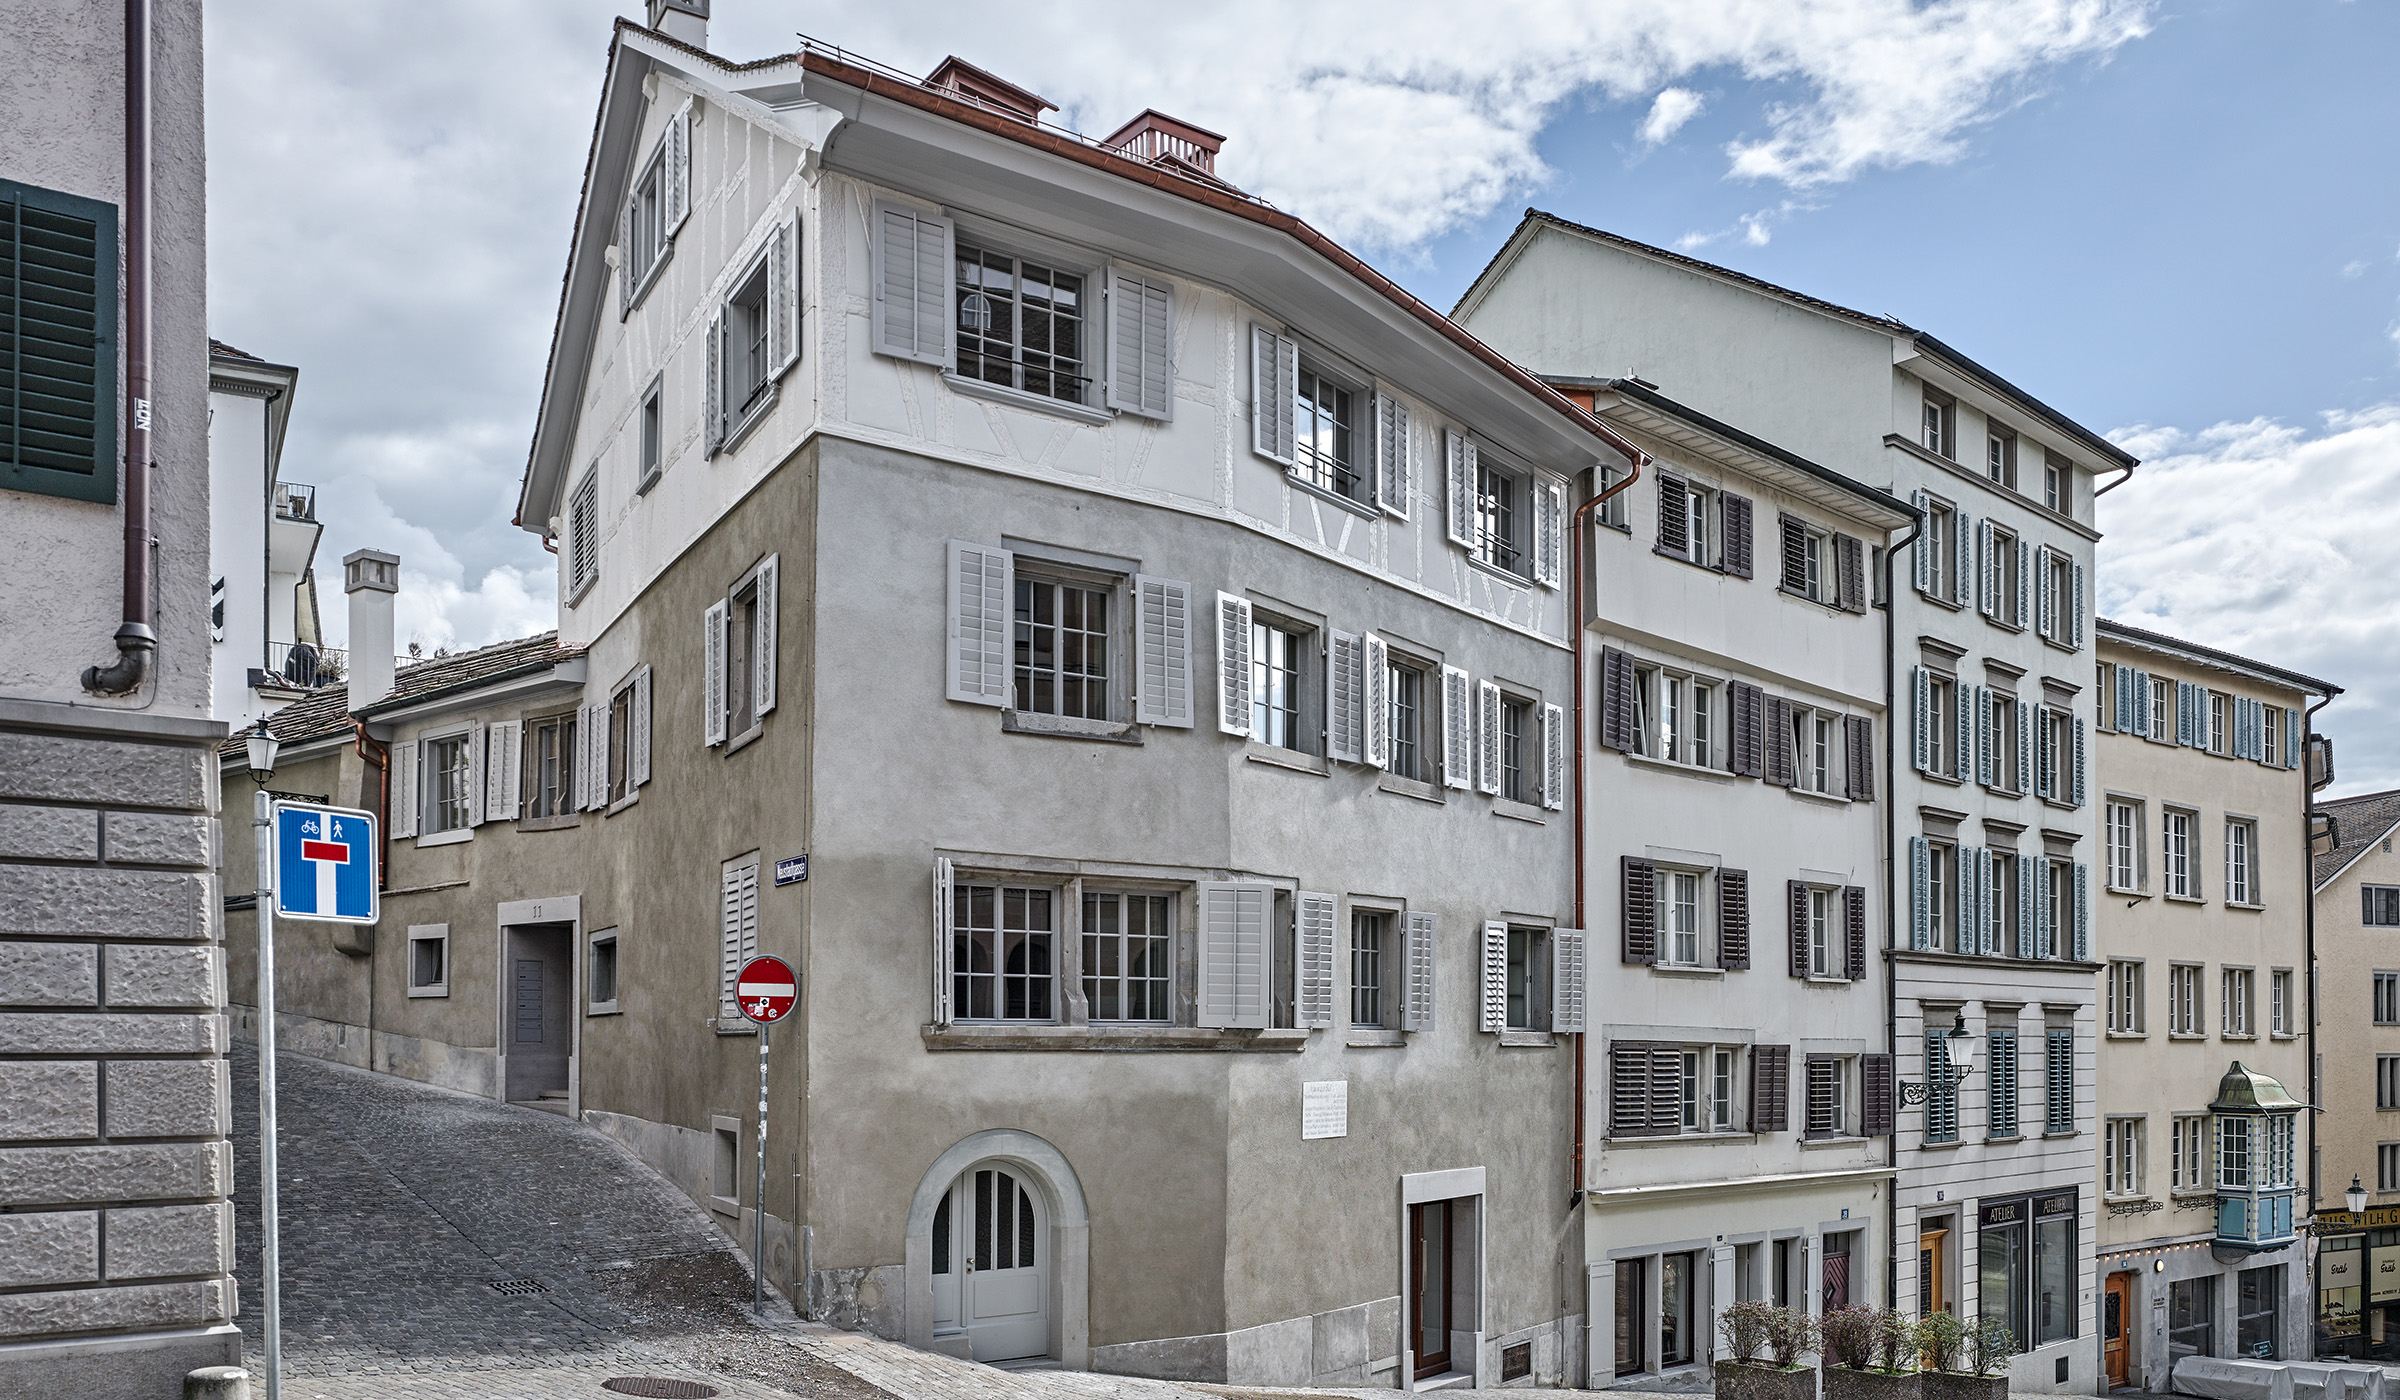 Haus zur Sul - Open House Zürich